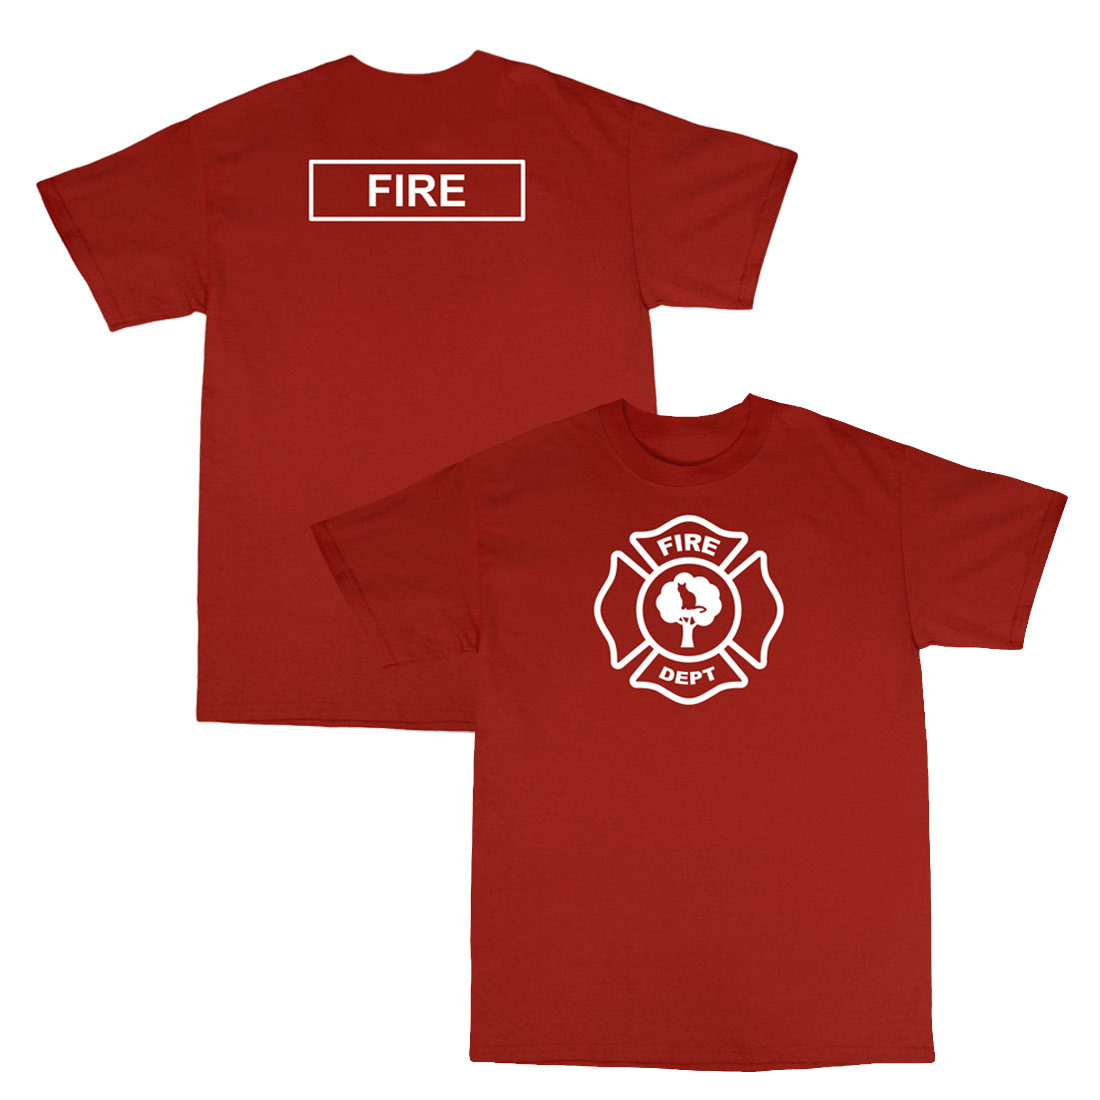 Children's 'Fire Department' T-Shirt